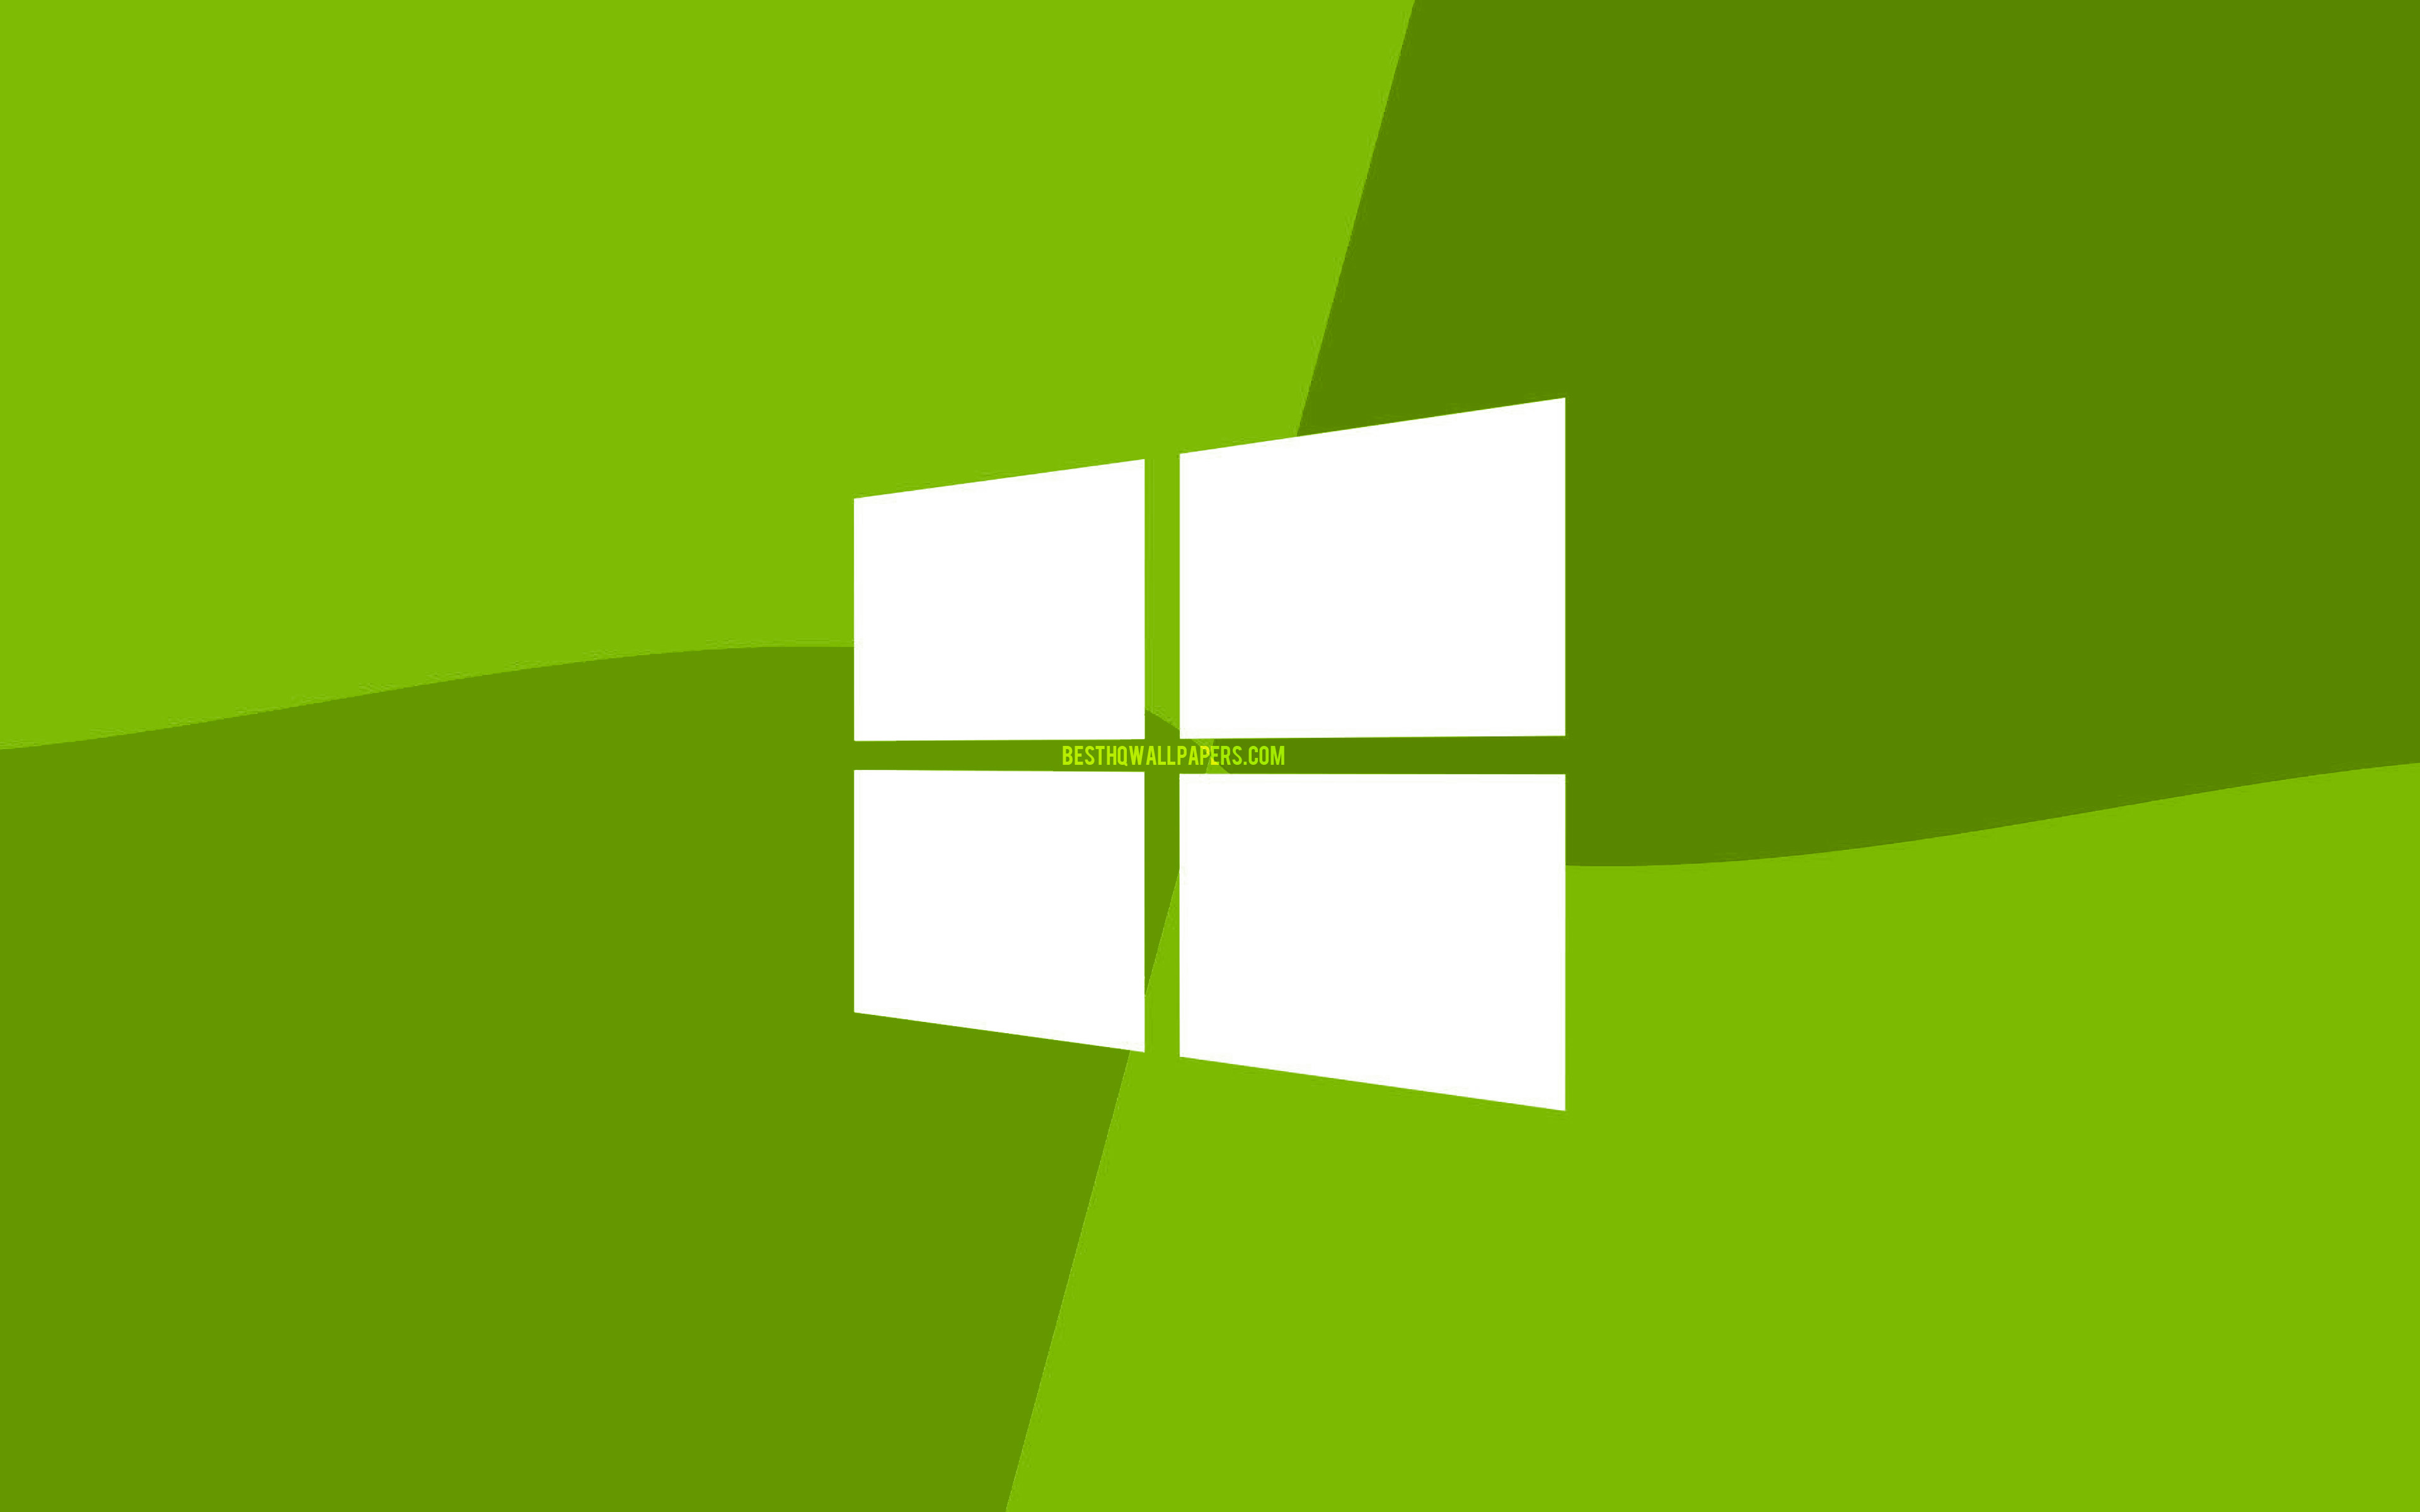 Windows 10 olive logo, 4k, Microsoft logo, minimal, OS, olive background, creative, Windows 10, artwork, Windows 10 logo